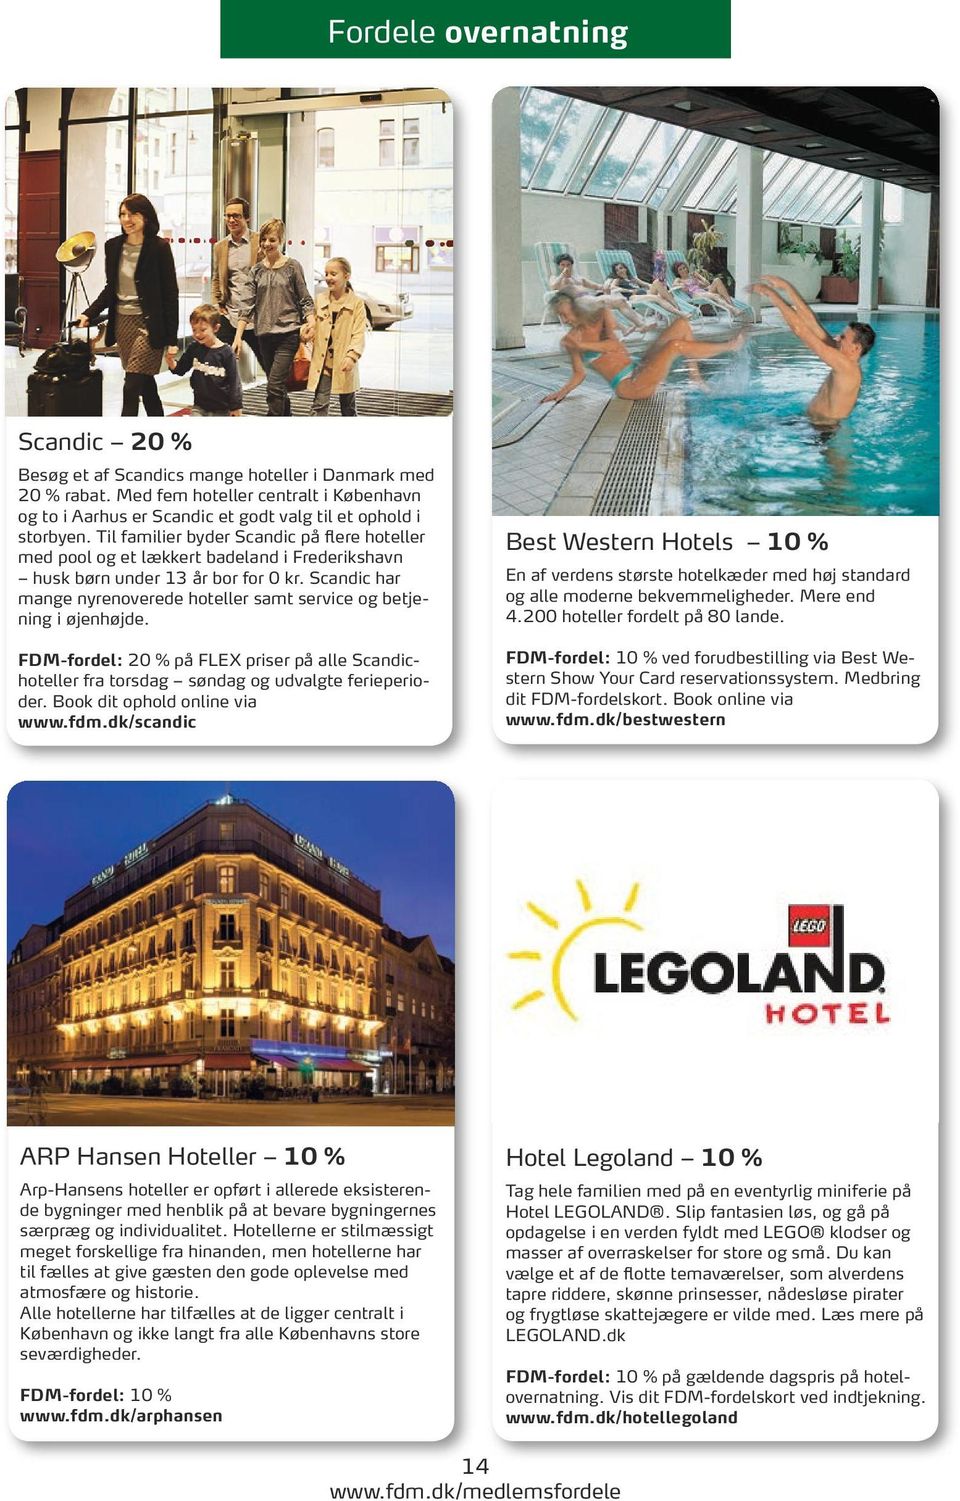 Scandic har mange nyrenoverede hoteller samt service og betjening i øjenhøjde. FDM-fordel: 20 % på FLEX priser på alle Scandichoteller fra torsdag søndag og udvalgte ferieperioder.